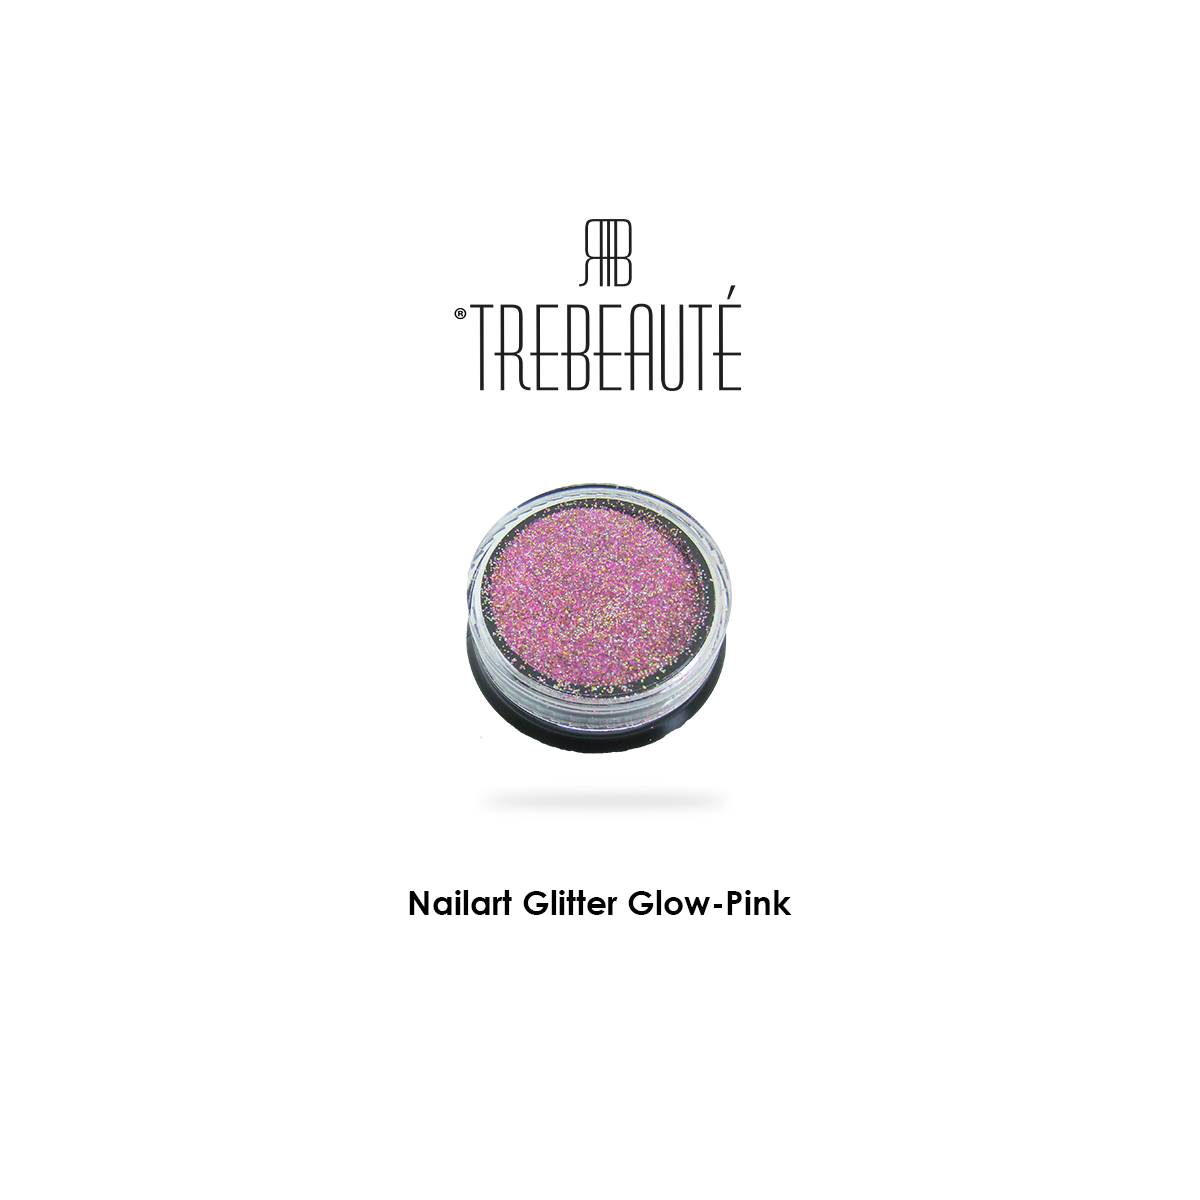 Nailart Glitter Glow-Pink